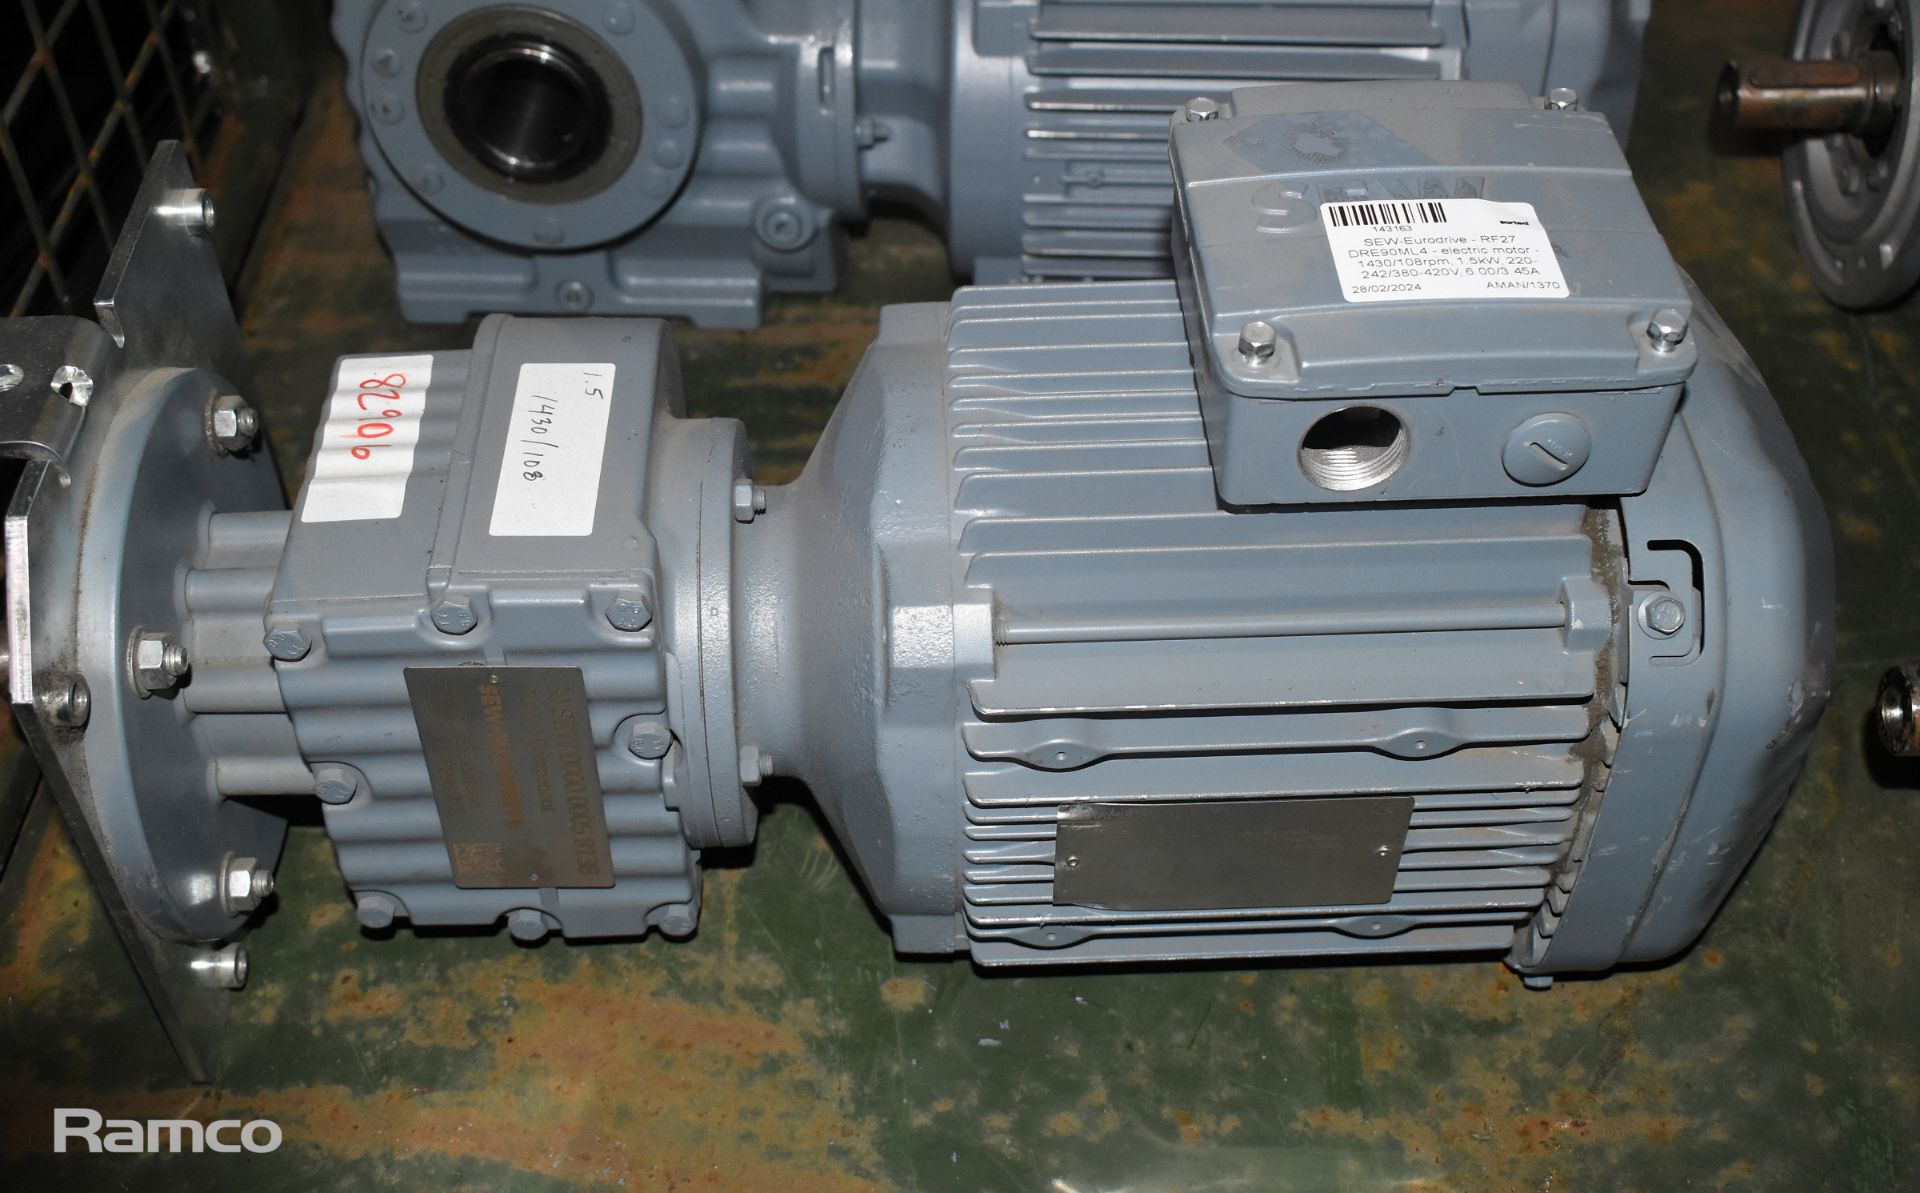 2x SEW-Eurodrive - RF27 DRE90ML4 electric motors - 1430/108rpm, 1.5kW, 220-242/380-420V, 6.00/3.45A - Image 7 of 9